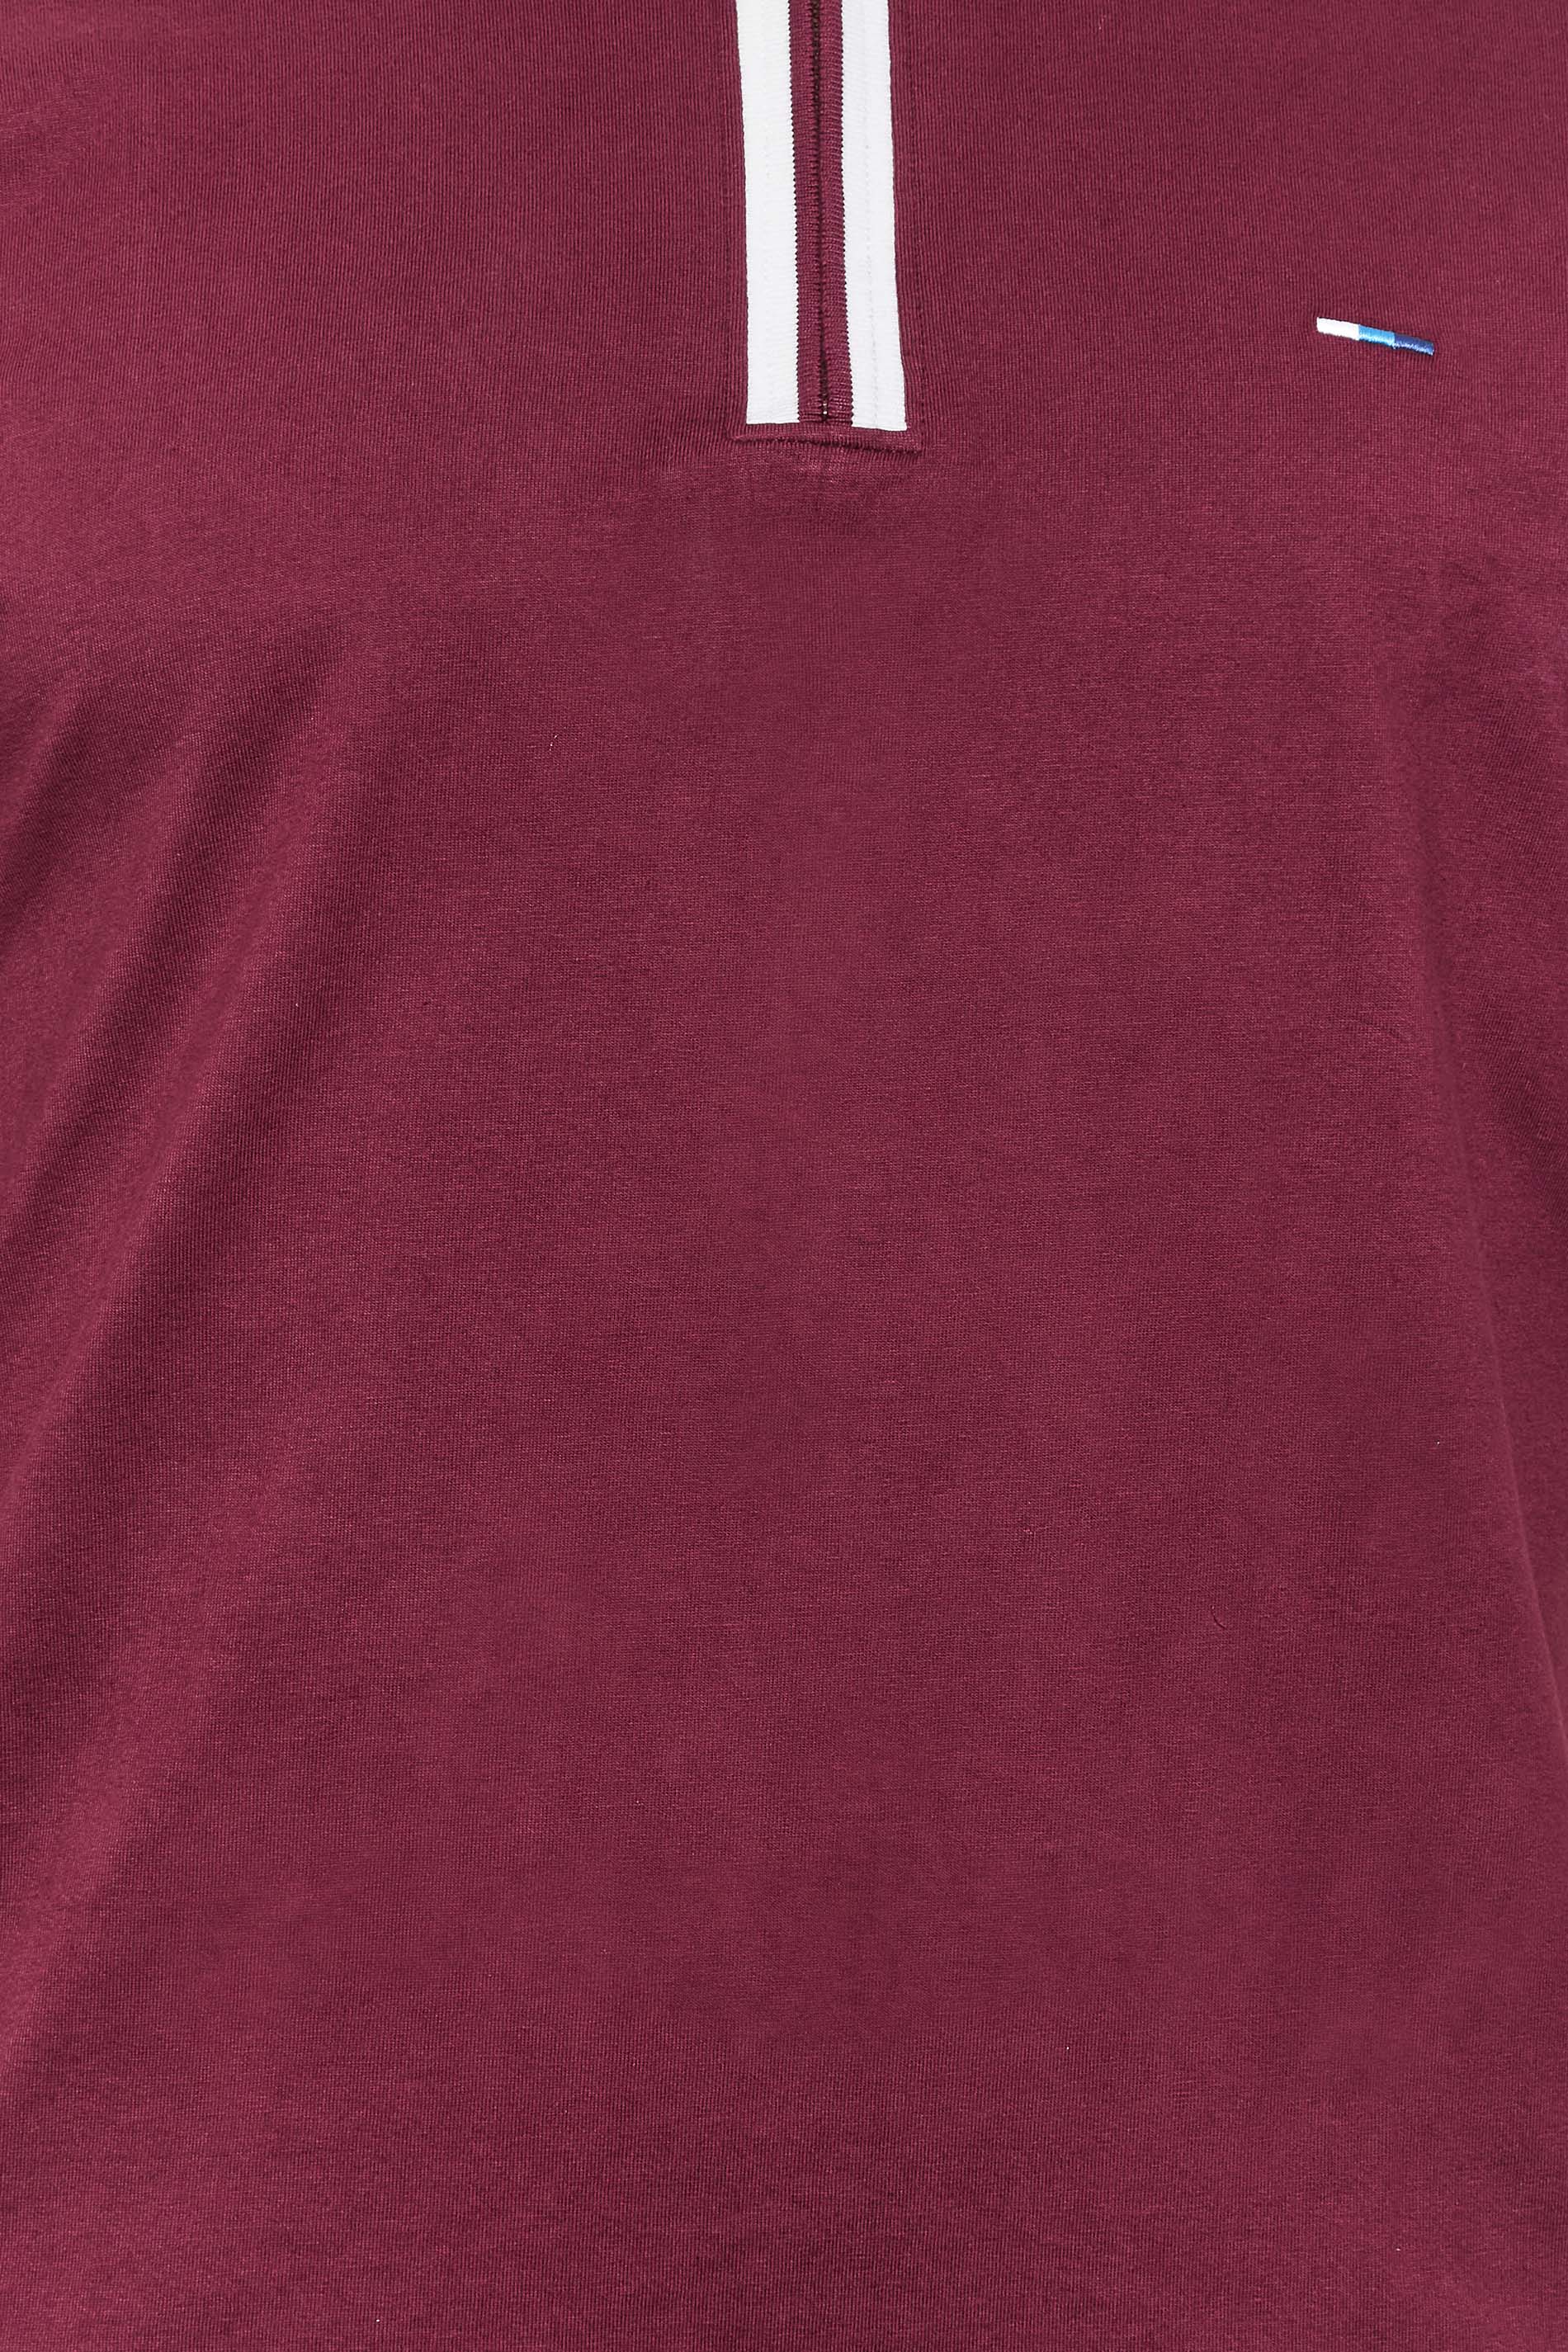 BadRhino Mens Big & Tall Burgundy Red Jersey Zip Polo Shirt | BadRhino 2